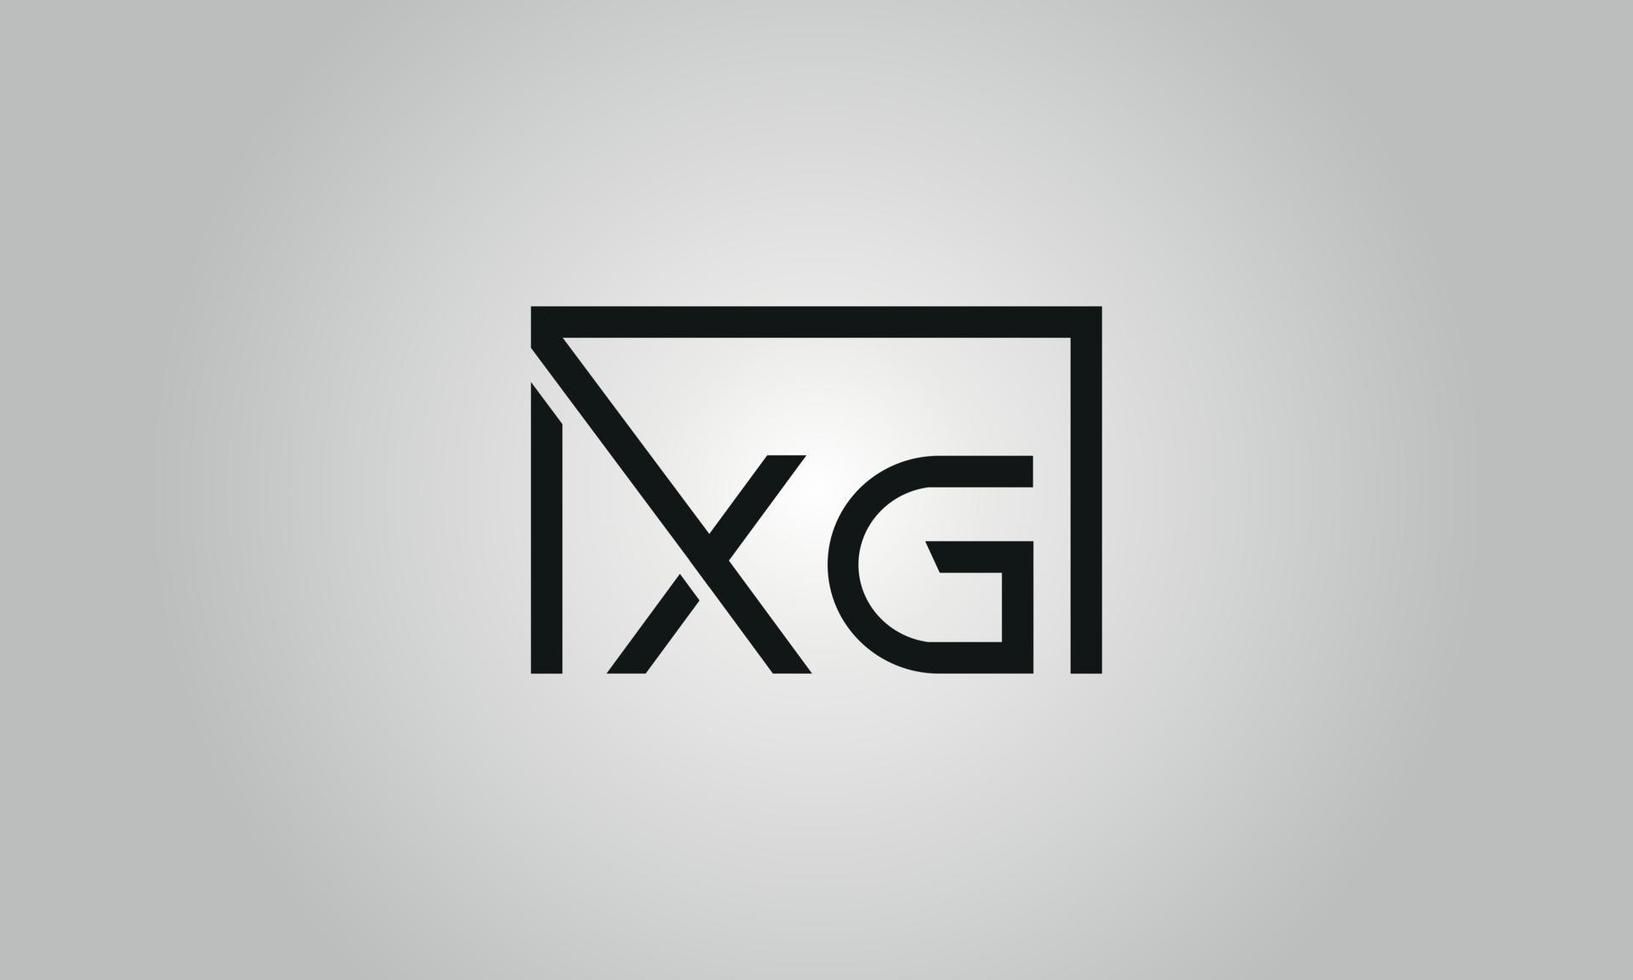 Buchstabe xg-Logo-Design. xg-Logo mit quadratischer Form in schwarzen Farben Vektor kostenlose Vektorvorlage.